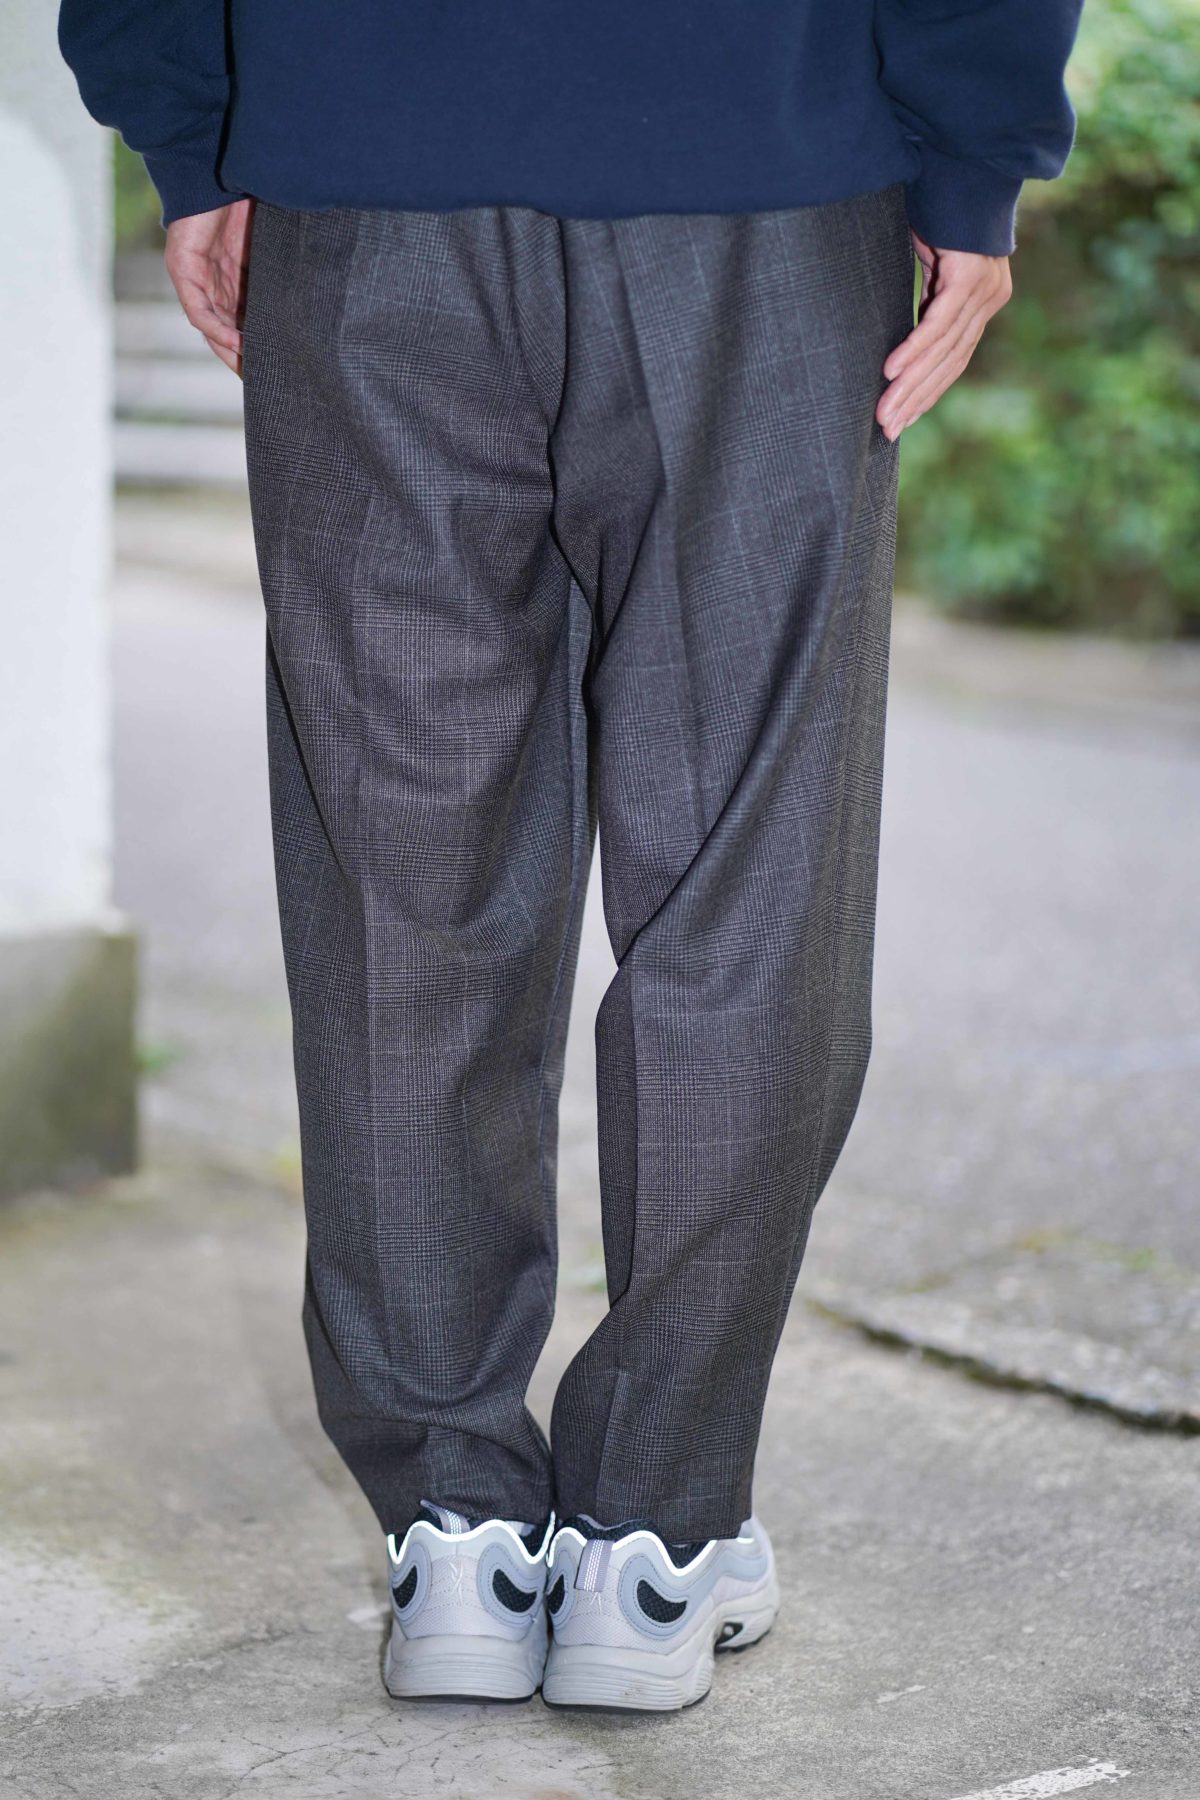 Lownn neo trousers | www.fleettracktz.com